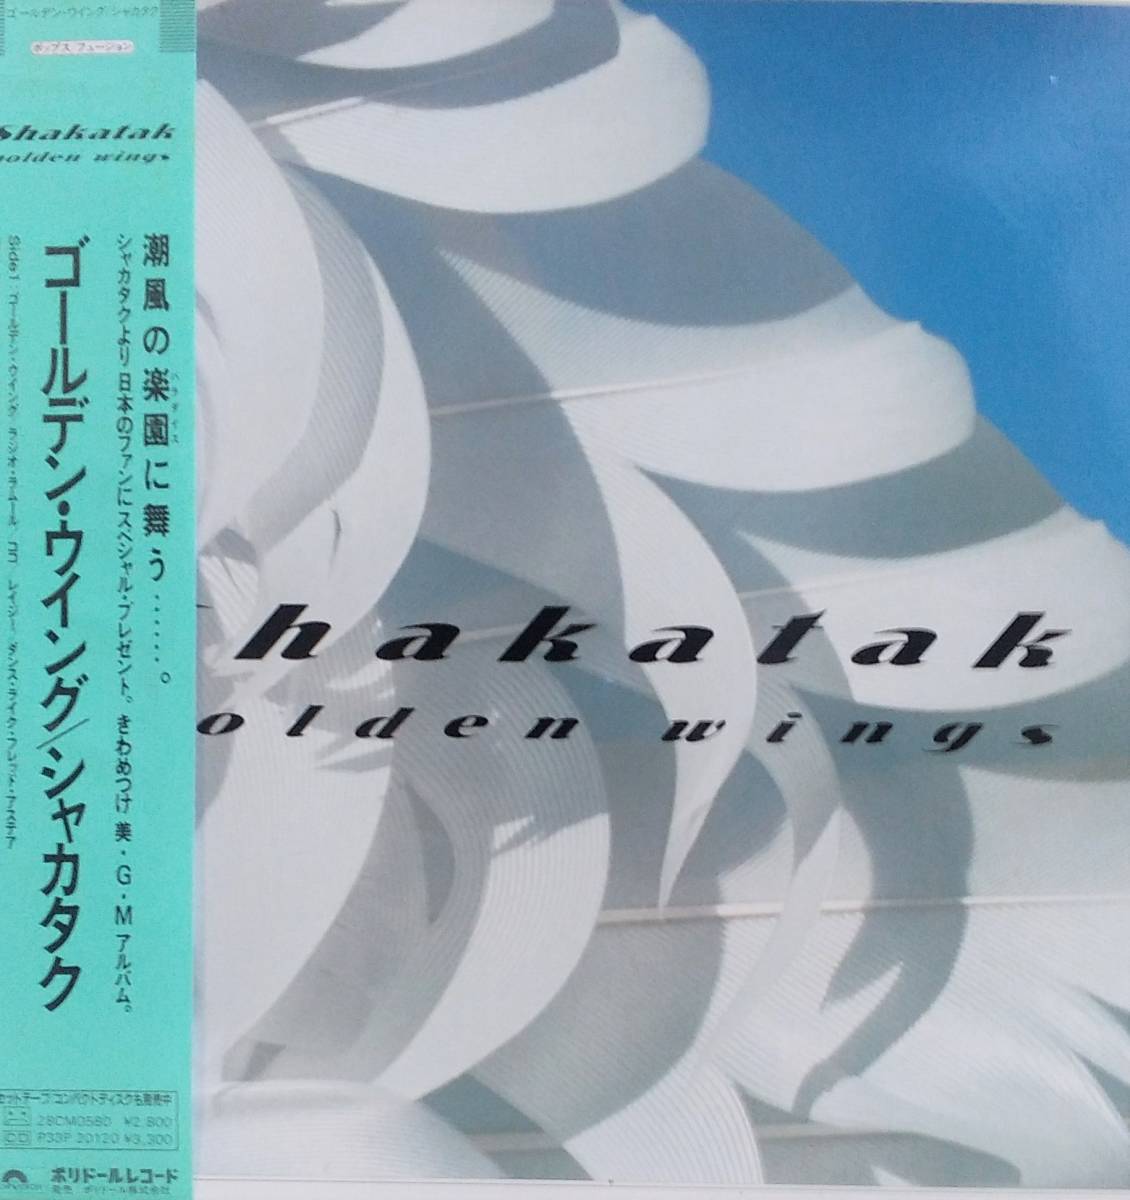 匿名 送料無料 シャカタク オンライン限定商品 LP 人気ブランドを Shakatak Golden Wings